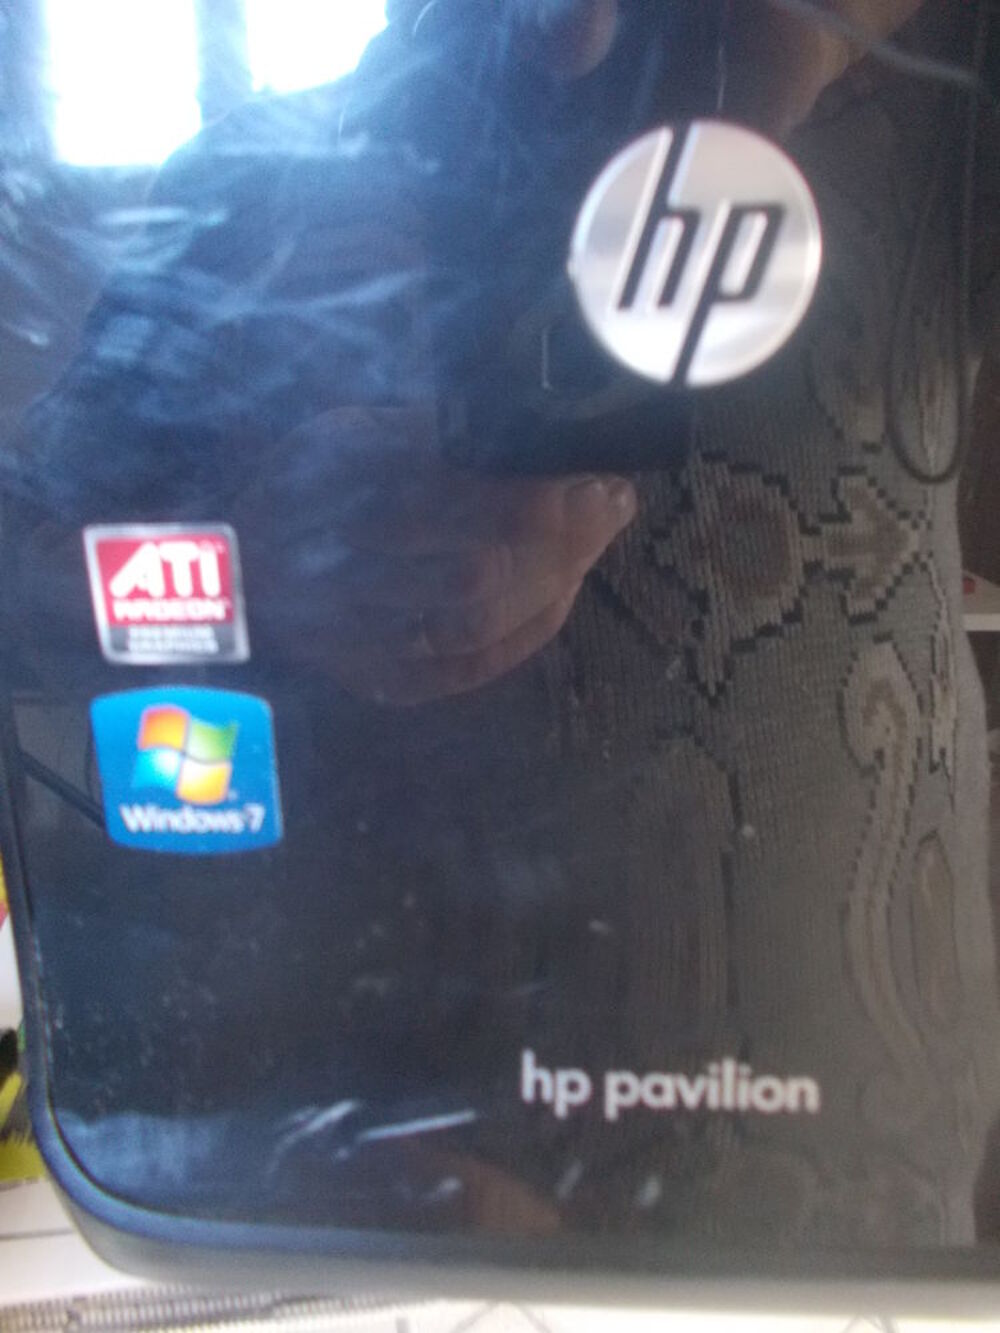 PC de bureau HP Pavillion p6 series faire prix Matriel informatique